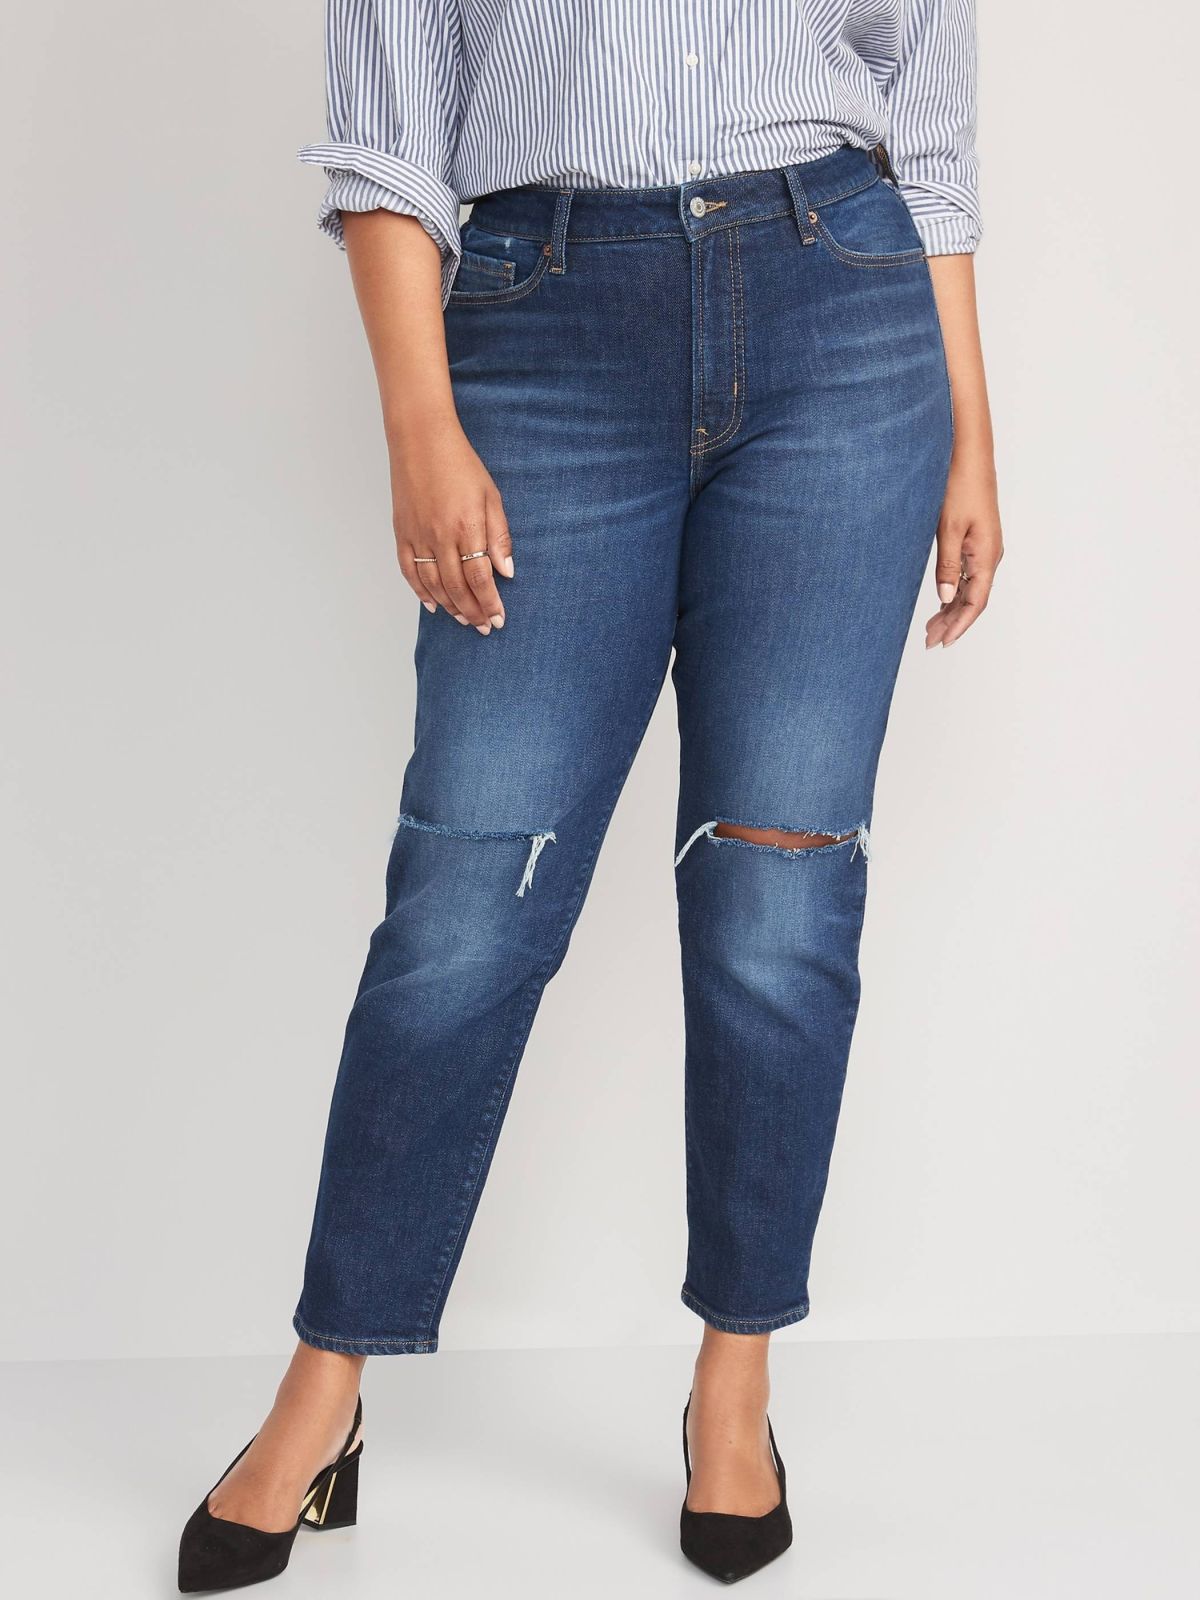  ג'ינס ארוך עם עיטורי קרעים של OLD NAVY